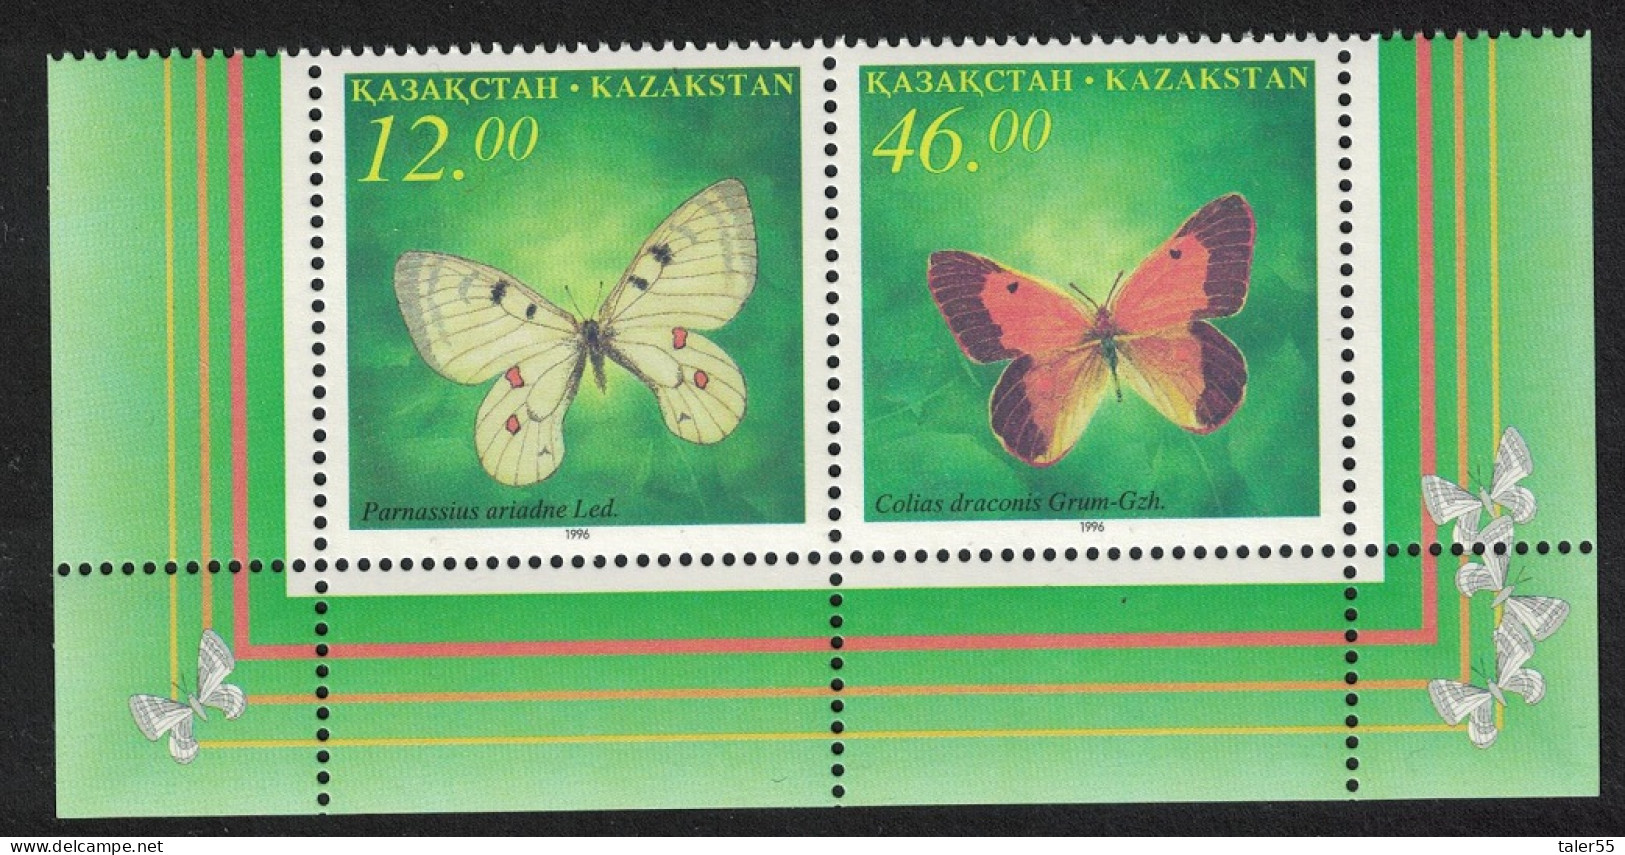 Kazakhstan Butterflies 2v Pair High Values 1996 MNH SG#138-139 - Kazakhstan